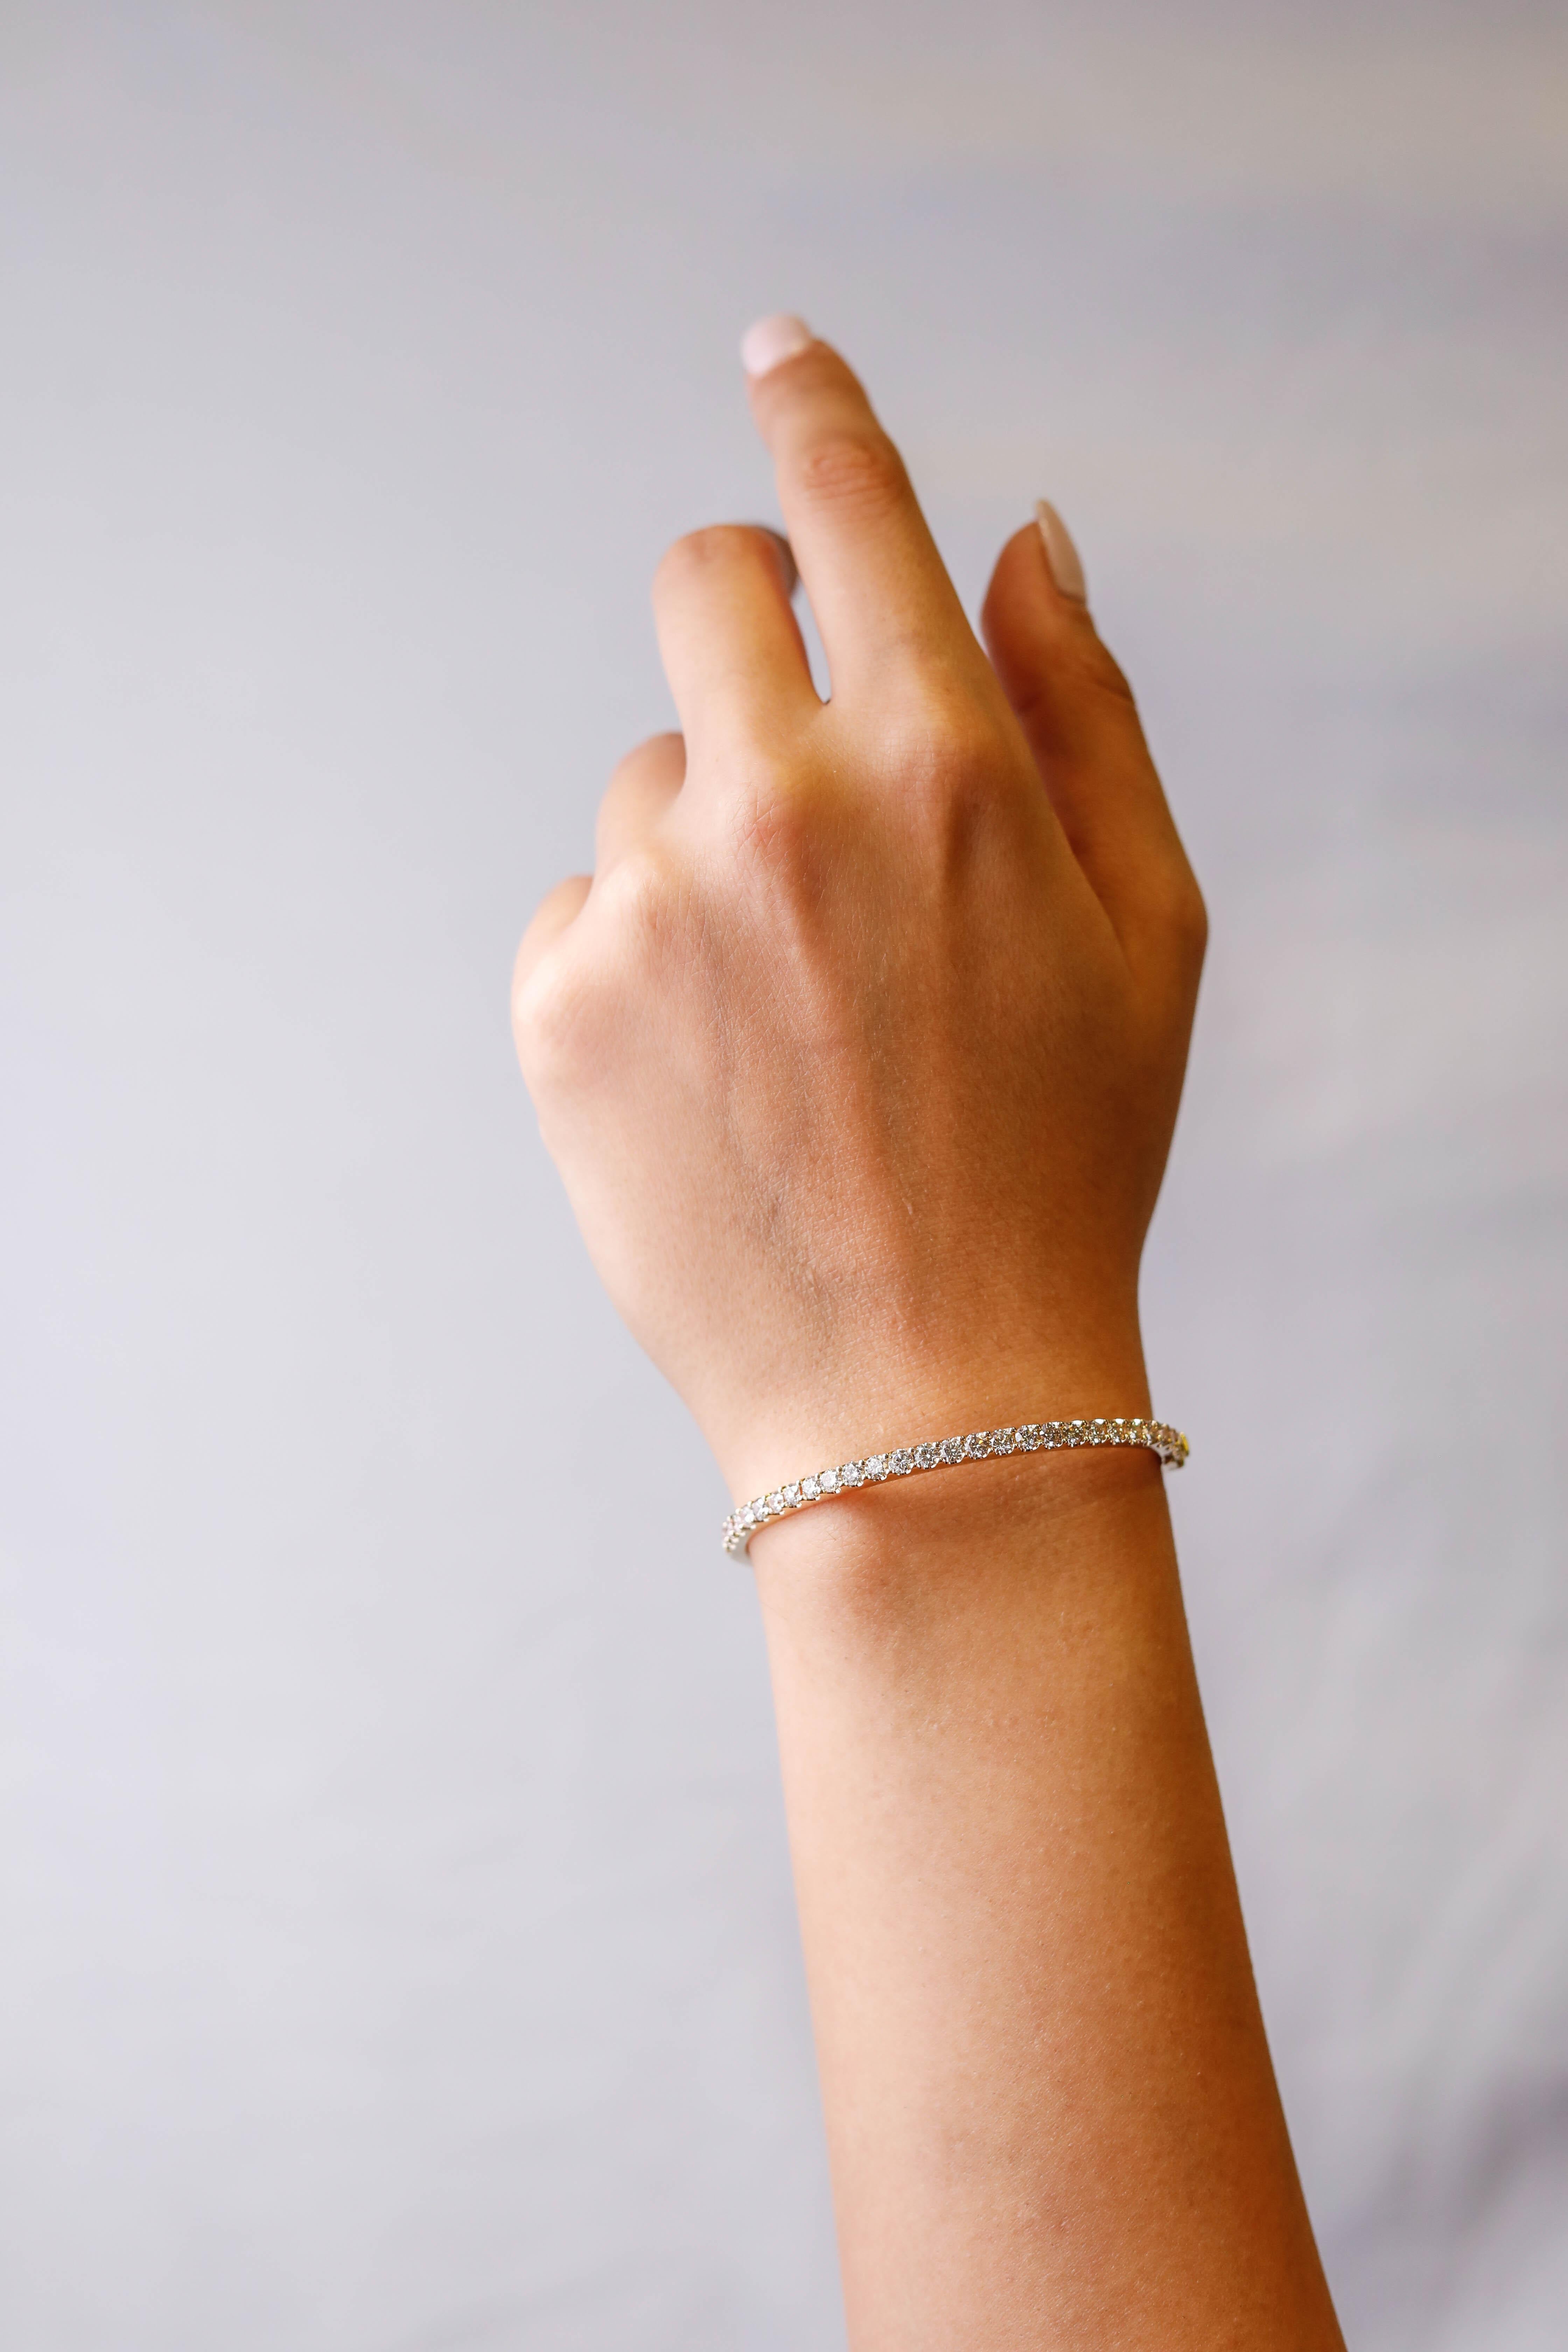 14k white gold bangle bracelet